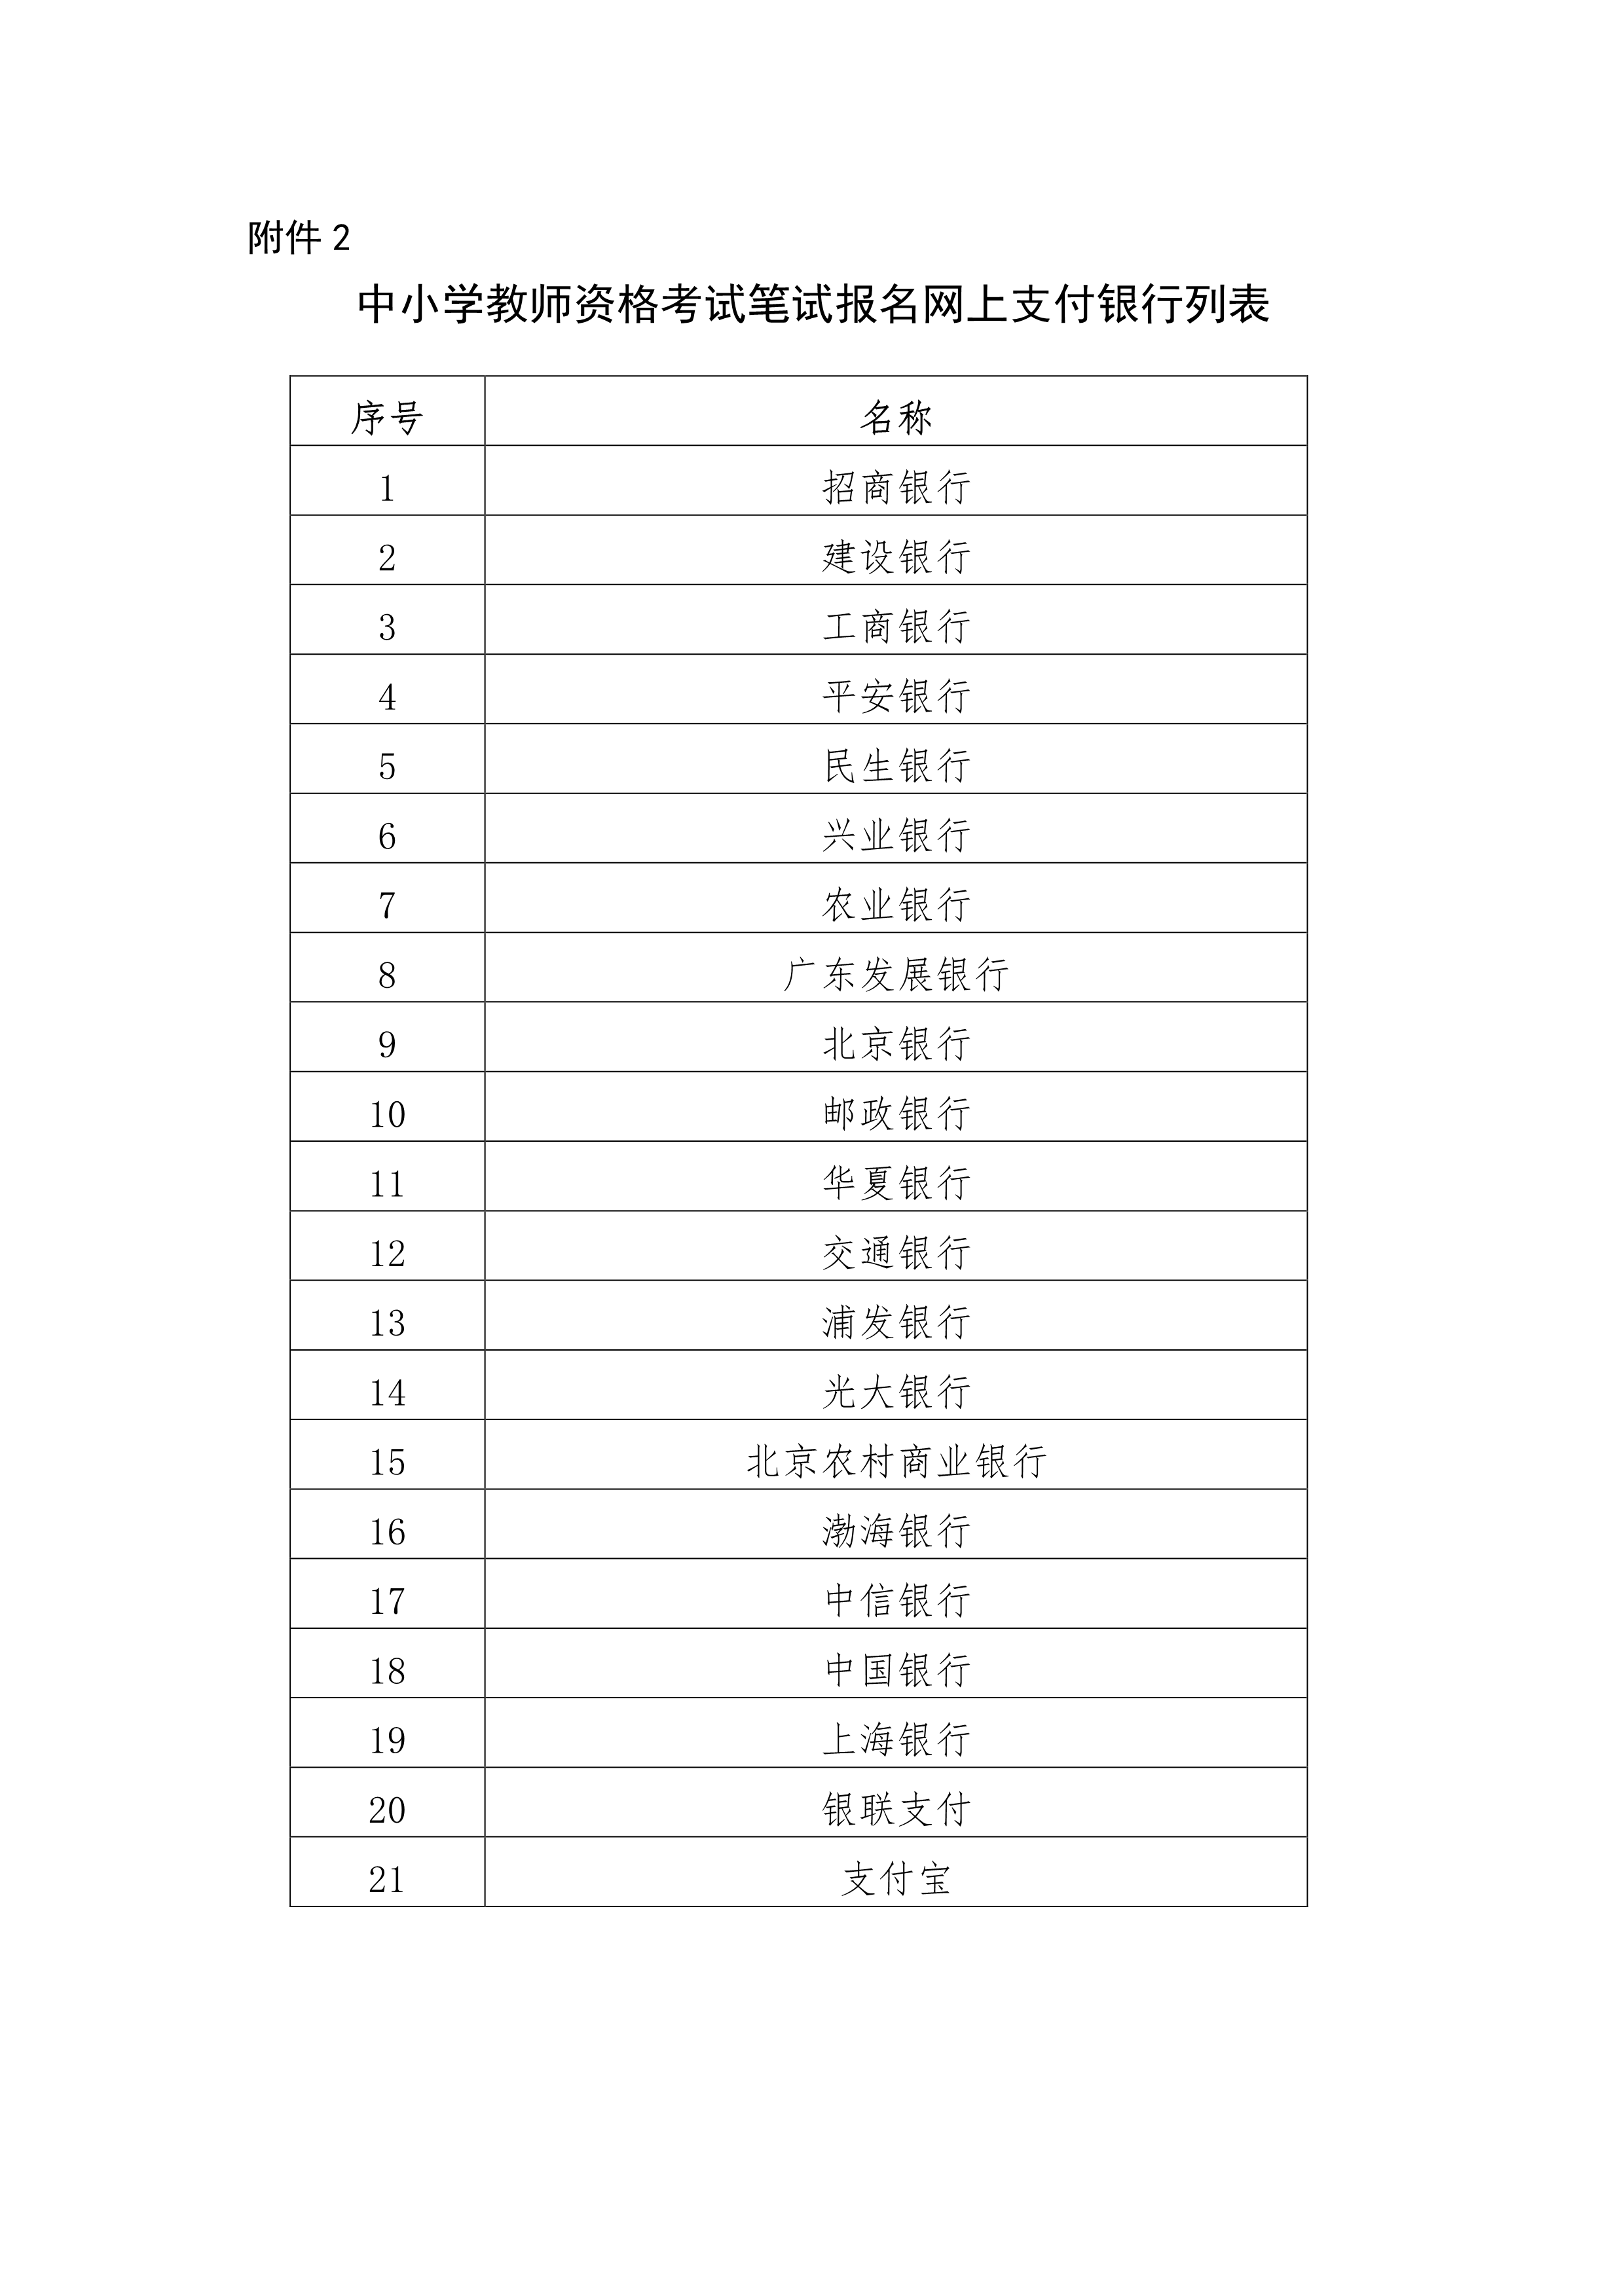 关于2020年下半年海南省中小学教师资格考试笔试报名的公告（2020.9.11）_6.png